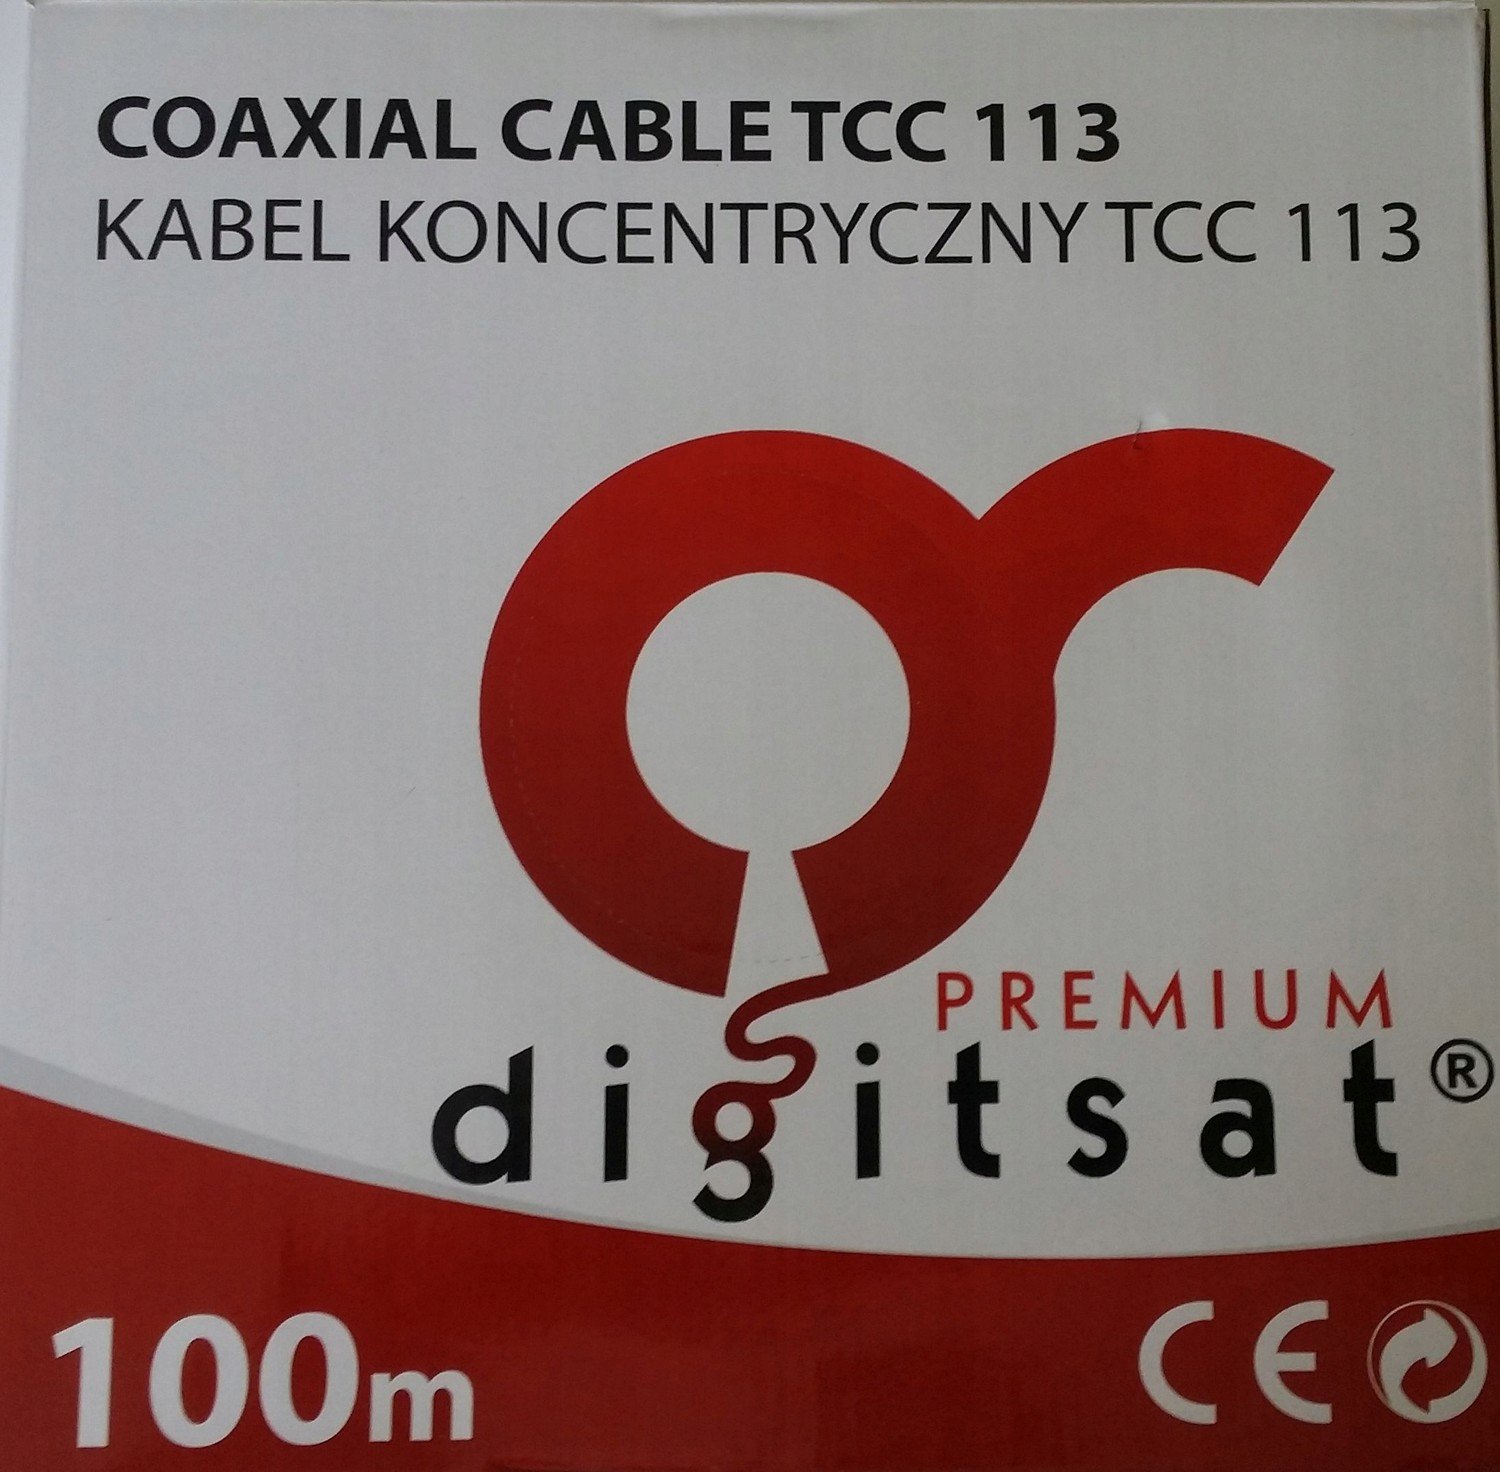 Kabel Digitsat Premium Tcc 113 Trishield Cu 100mb